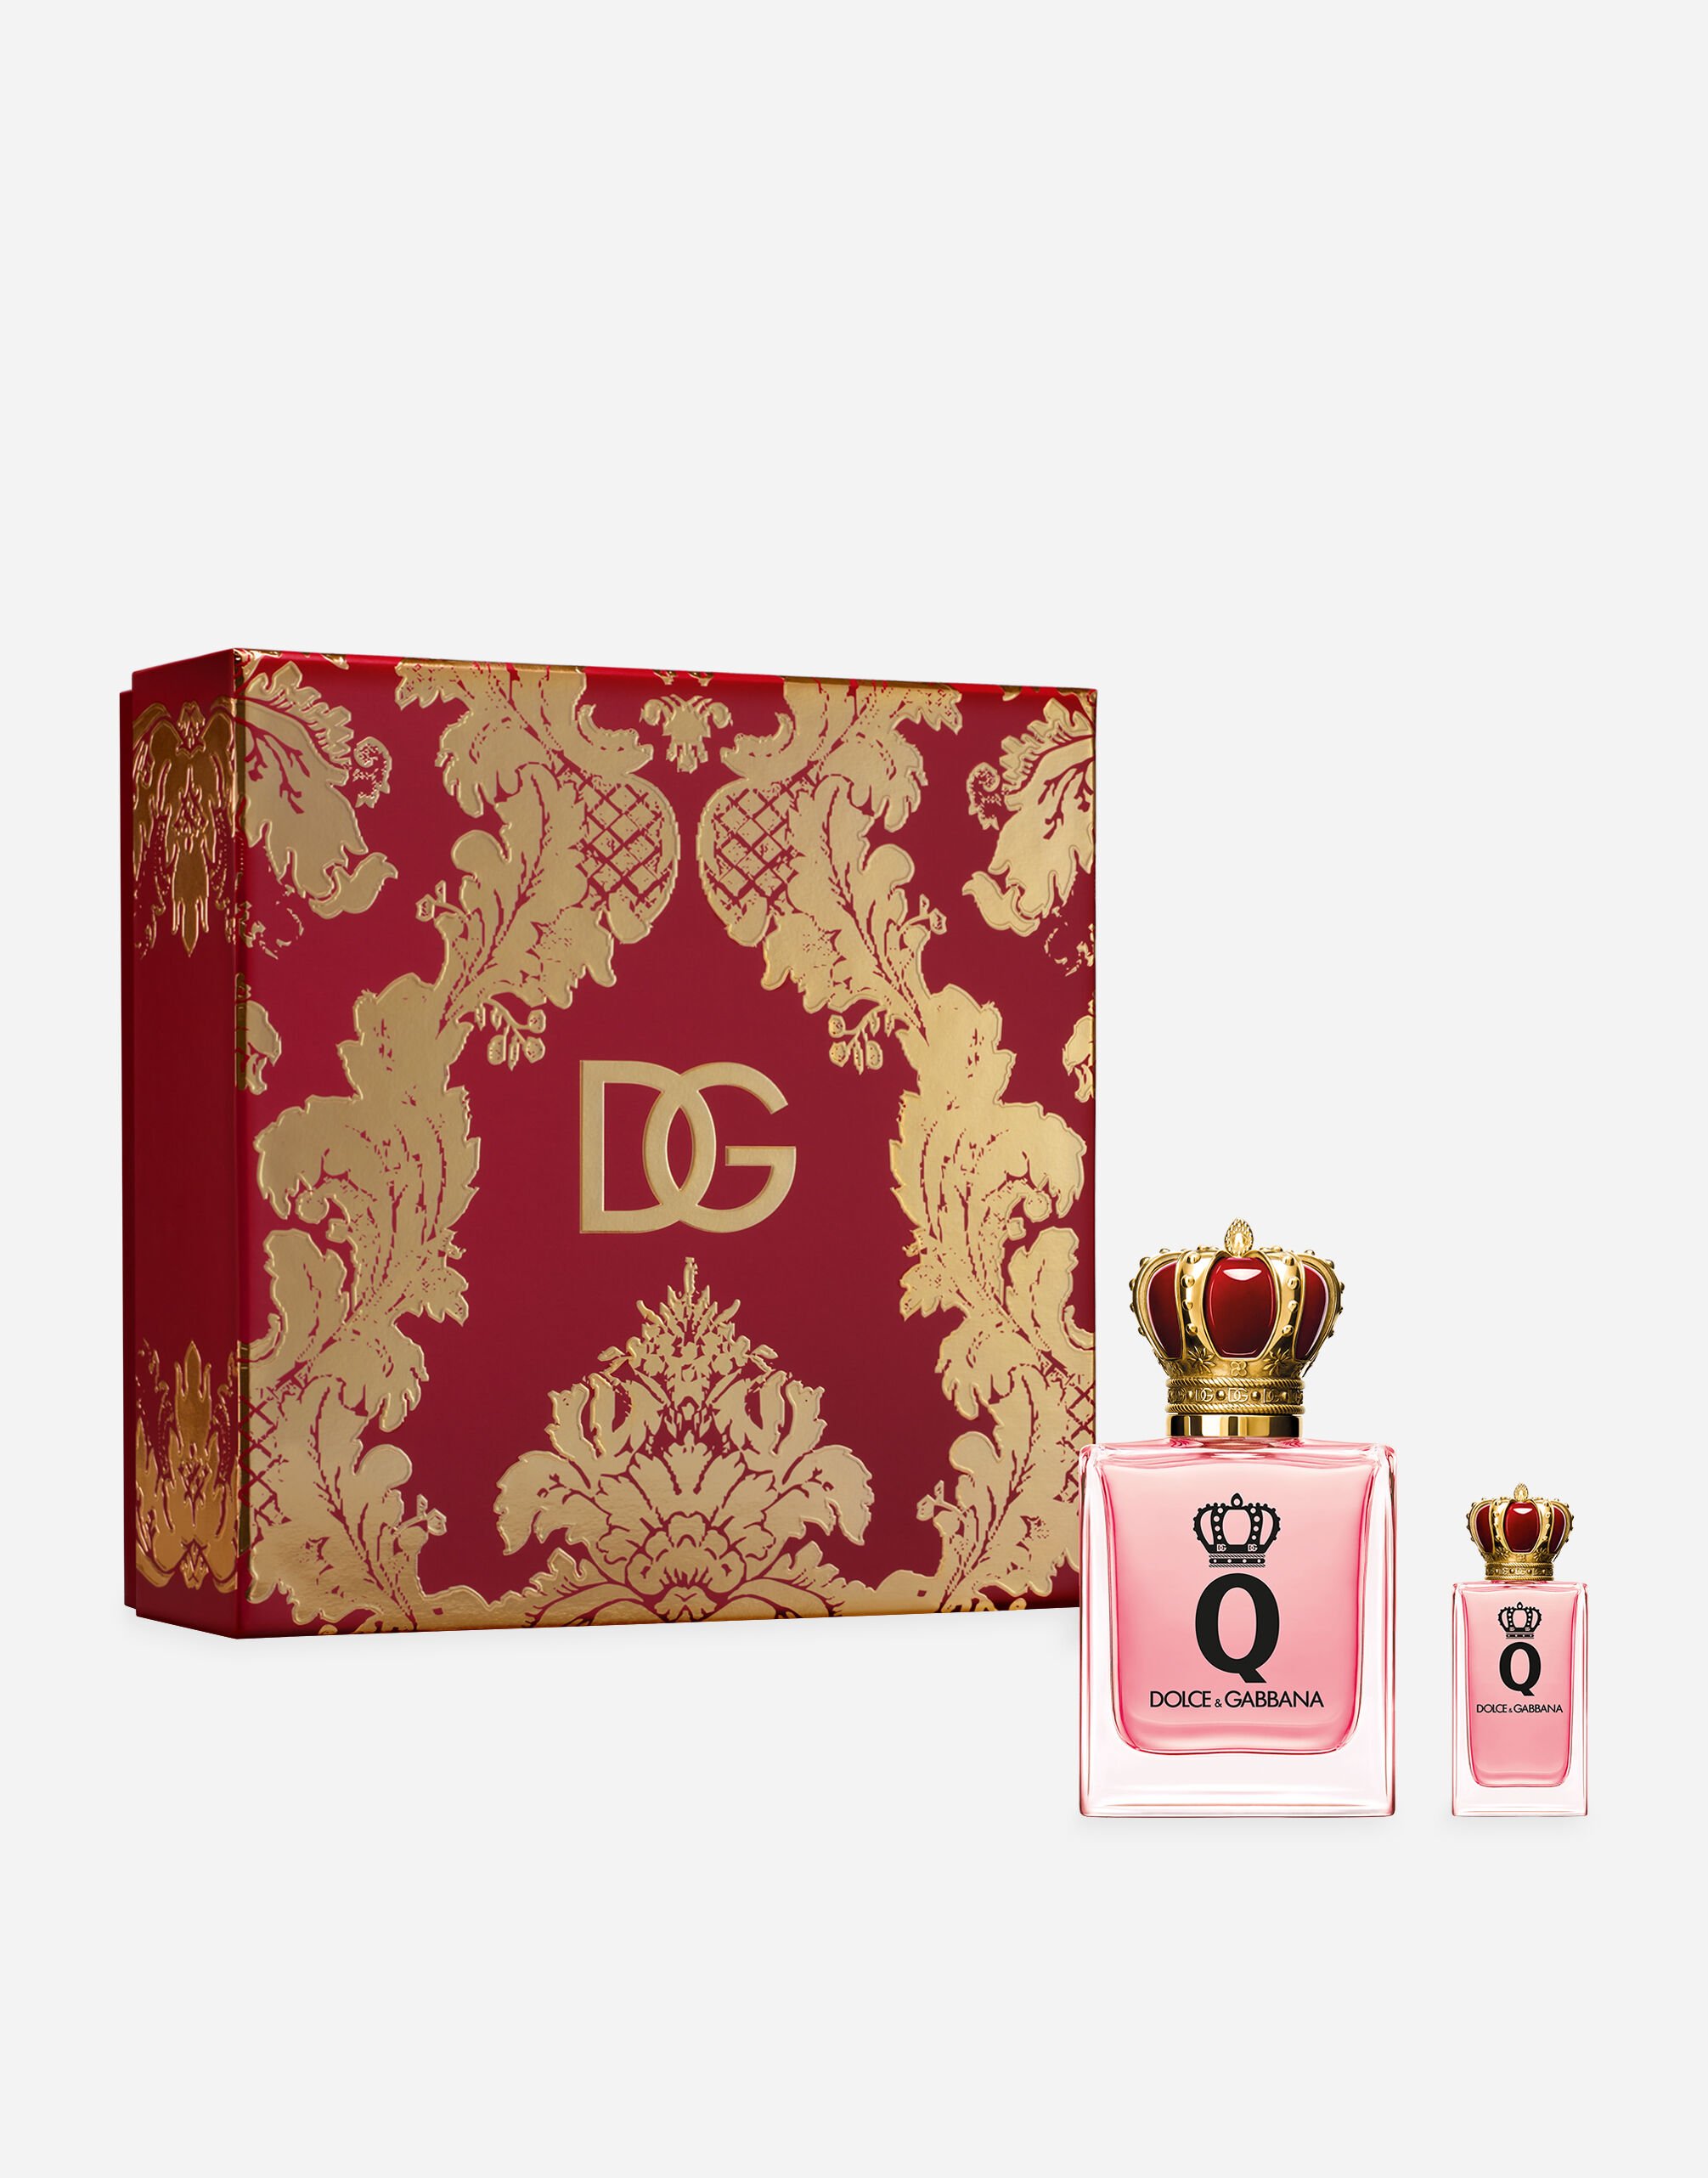 Dolce & Gabbana Q by Dolce&Gabbana Eau de Parfum 独家礼盒 - VP003BVP000